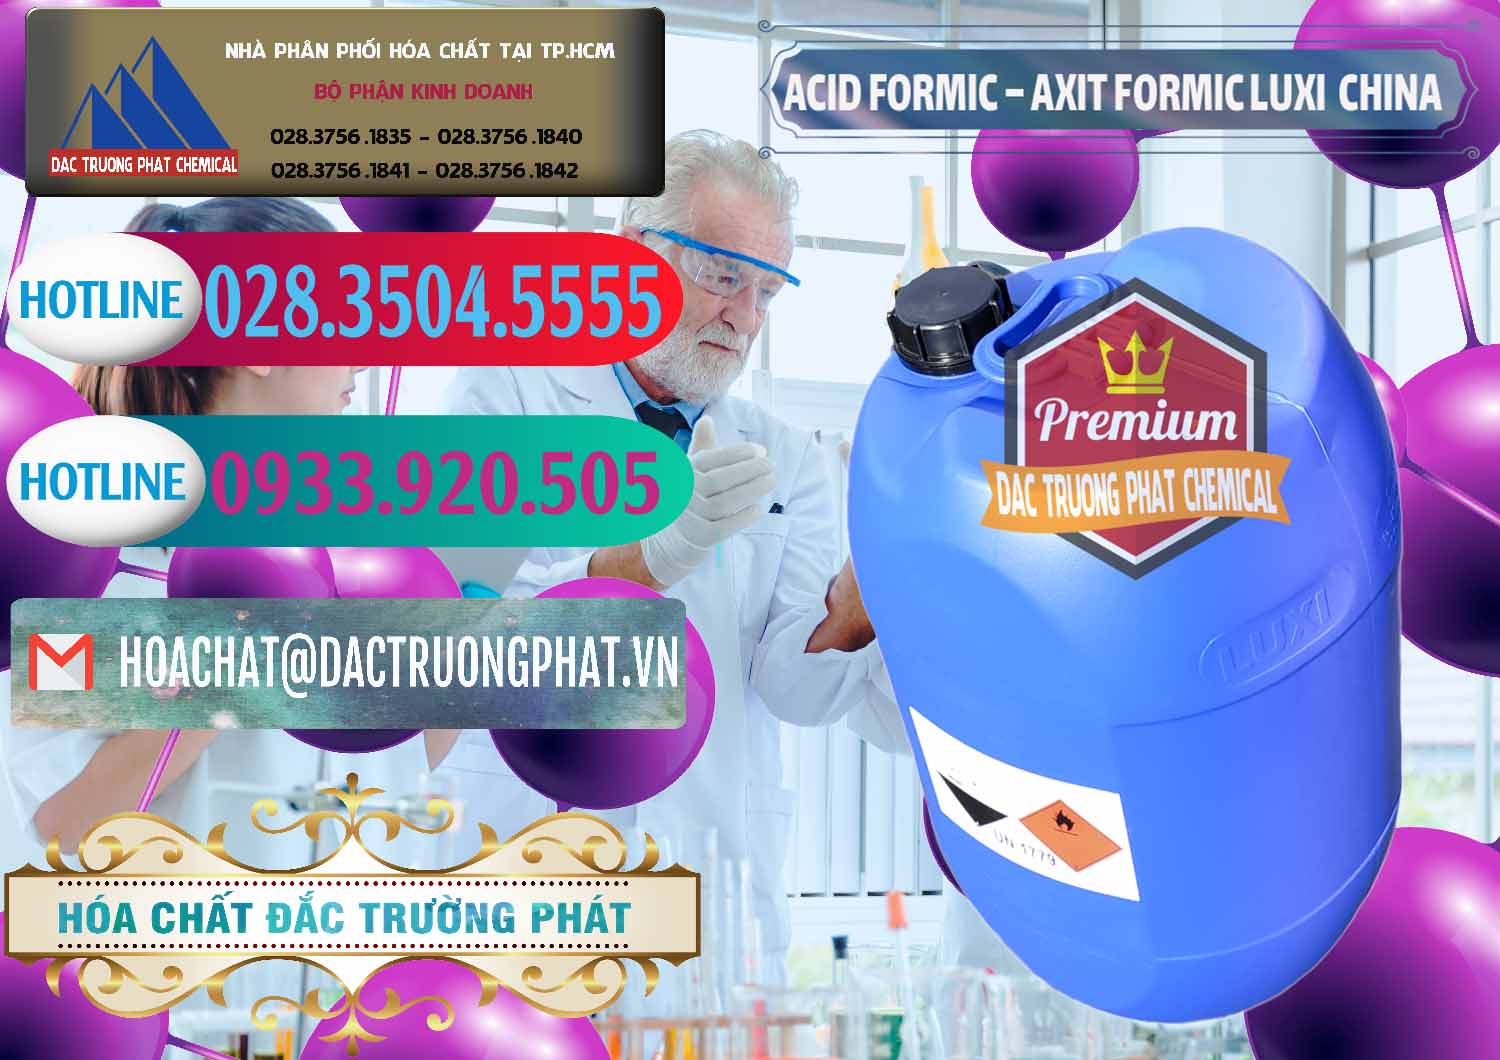 Đơn vị chuyên nhập khẩu _ bán Acid Formic - Axit Formic Luxi Trung Quốc China - 0029 - Công ty chuyên cung cấp & bán hóa chất tại TP.HCM - truongphat.vn